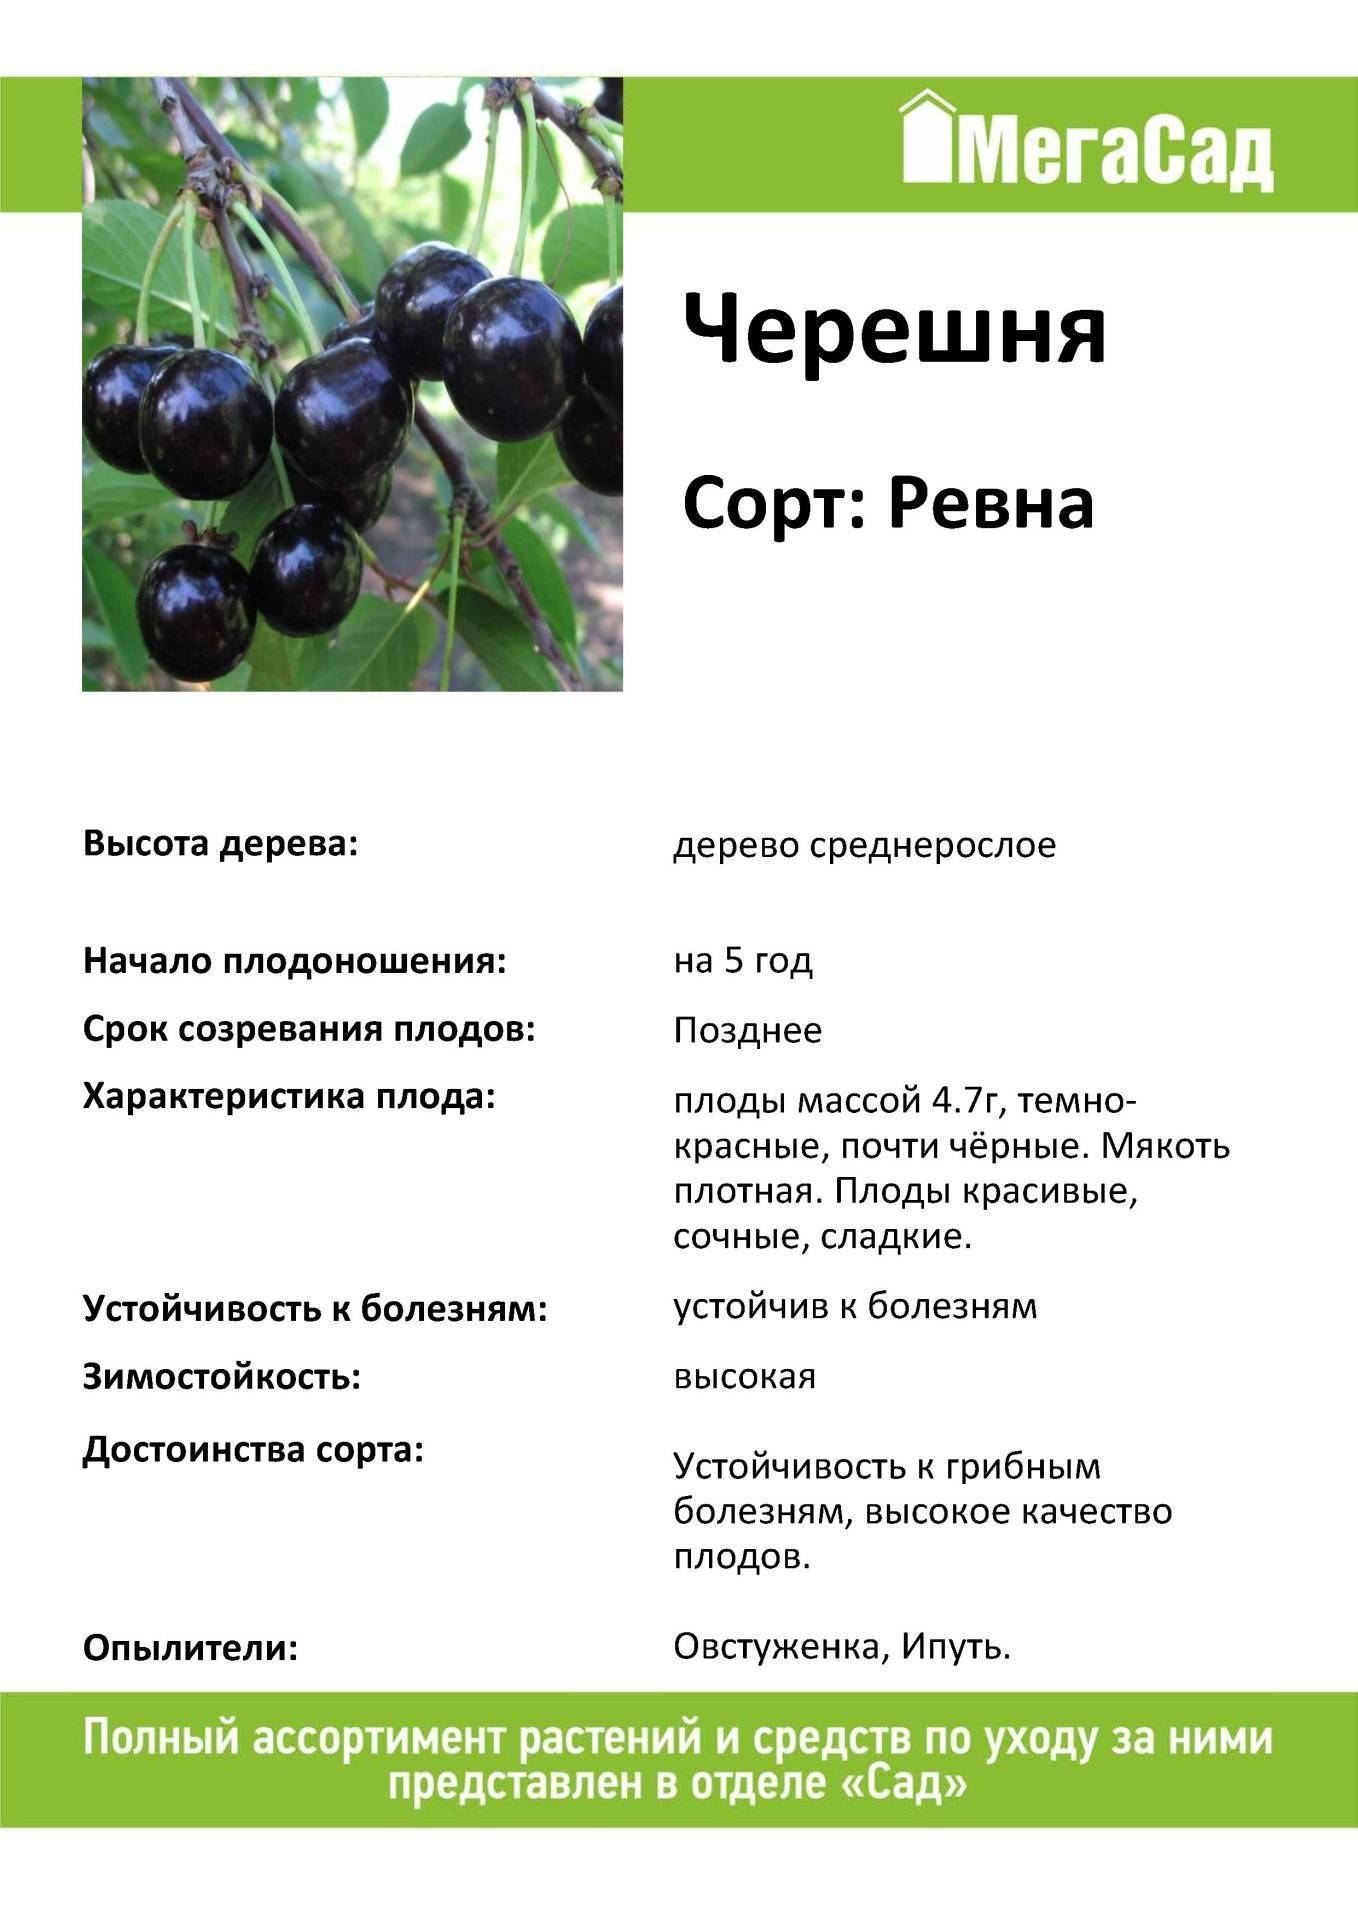 Почему так популярна черешня сорта ленинградская черная?